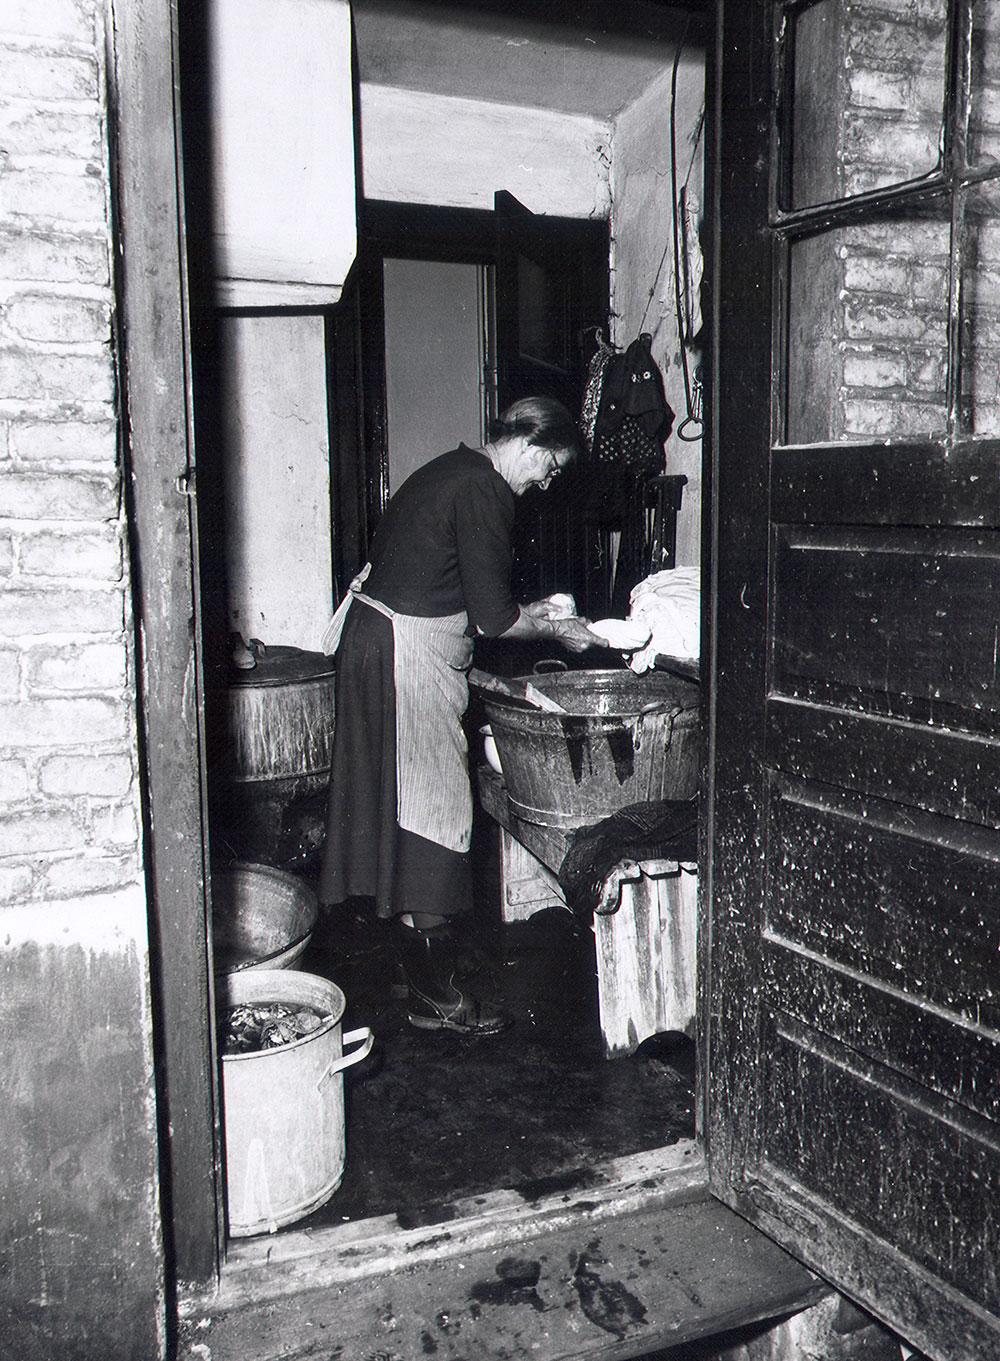 Efter at vaskeriet var nedlagt i de hambroske badeanstalter, havde fattige kvinder ikke andre muligheder end at klare tøjvask i deres små køkkener eller i boligejendommenes vaskekældre. Som her i en saneringsmoden ejendom i Baggesensgade på Nørrebro. Billedet er taget så sent som 1965 (foto: Boligkommissionen/Københavns Stadsarkiv).